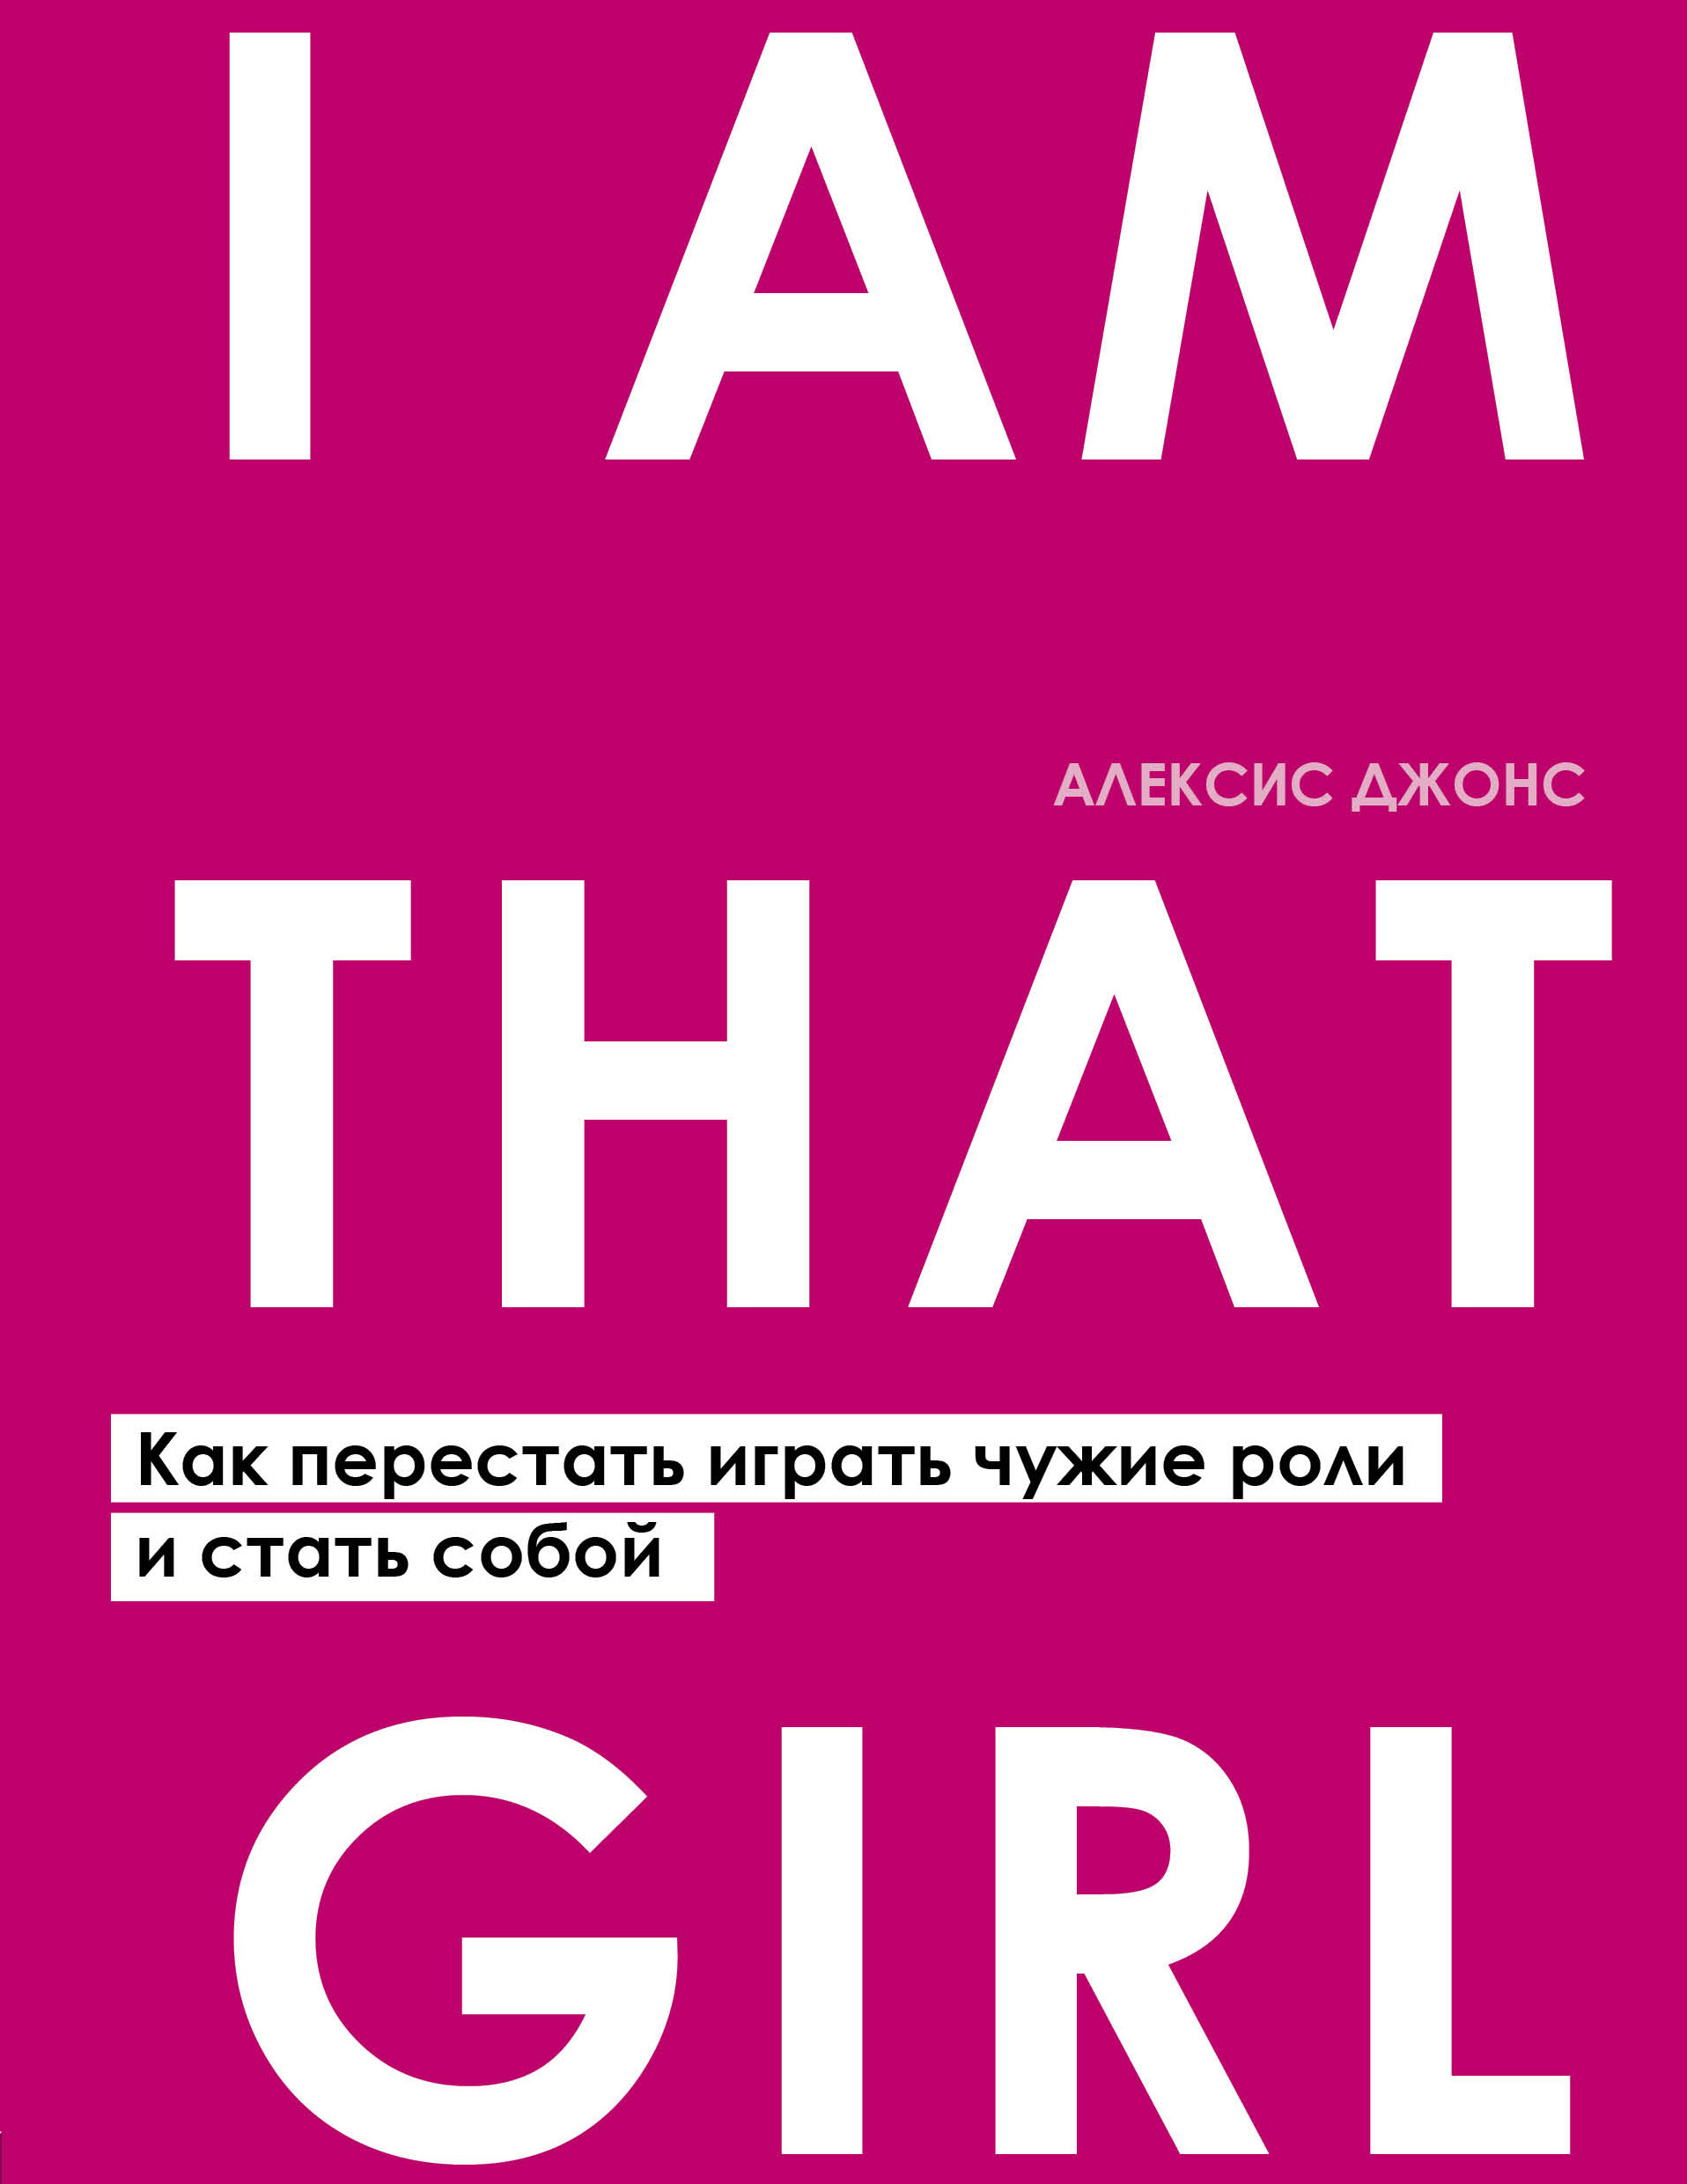 I Am That Girl. Как перестать играть чужие роли и стать собой читать онлайн